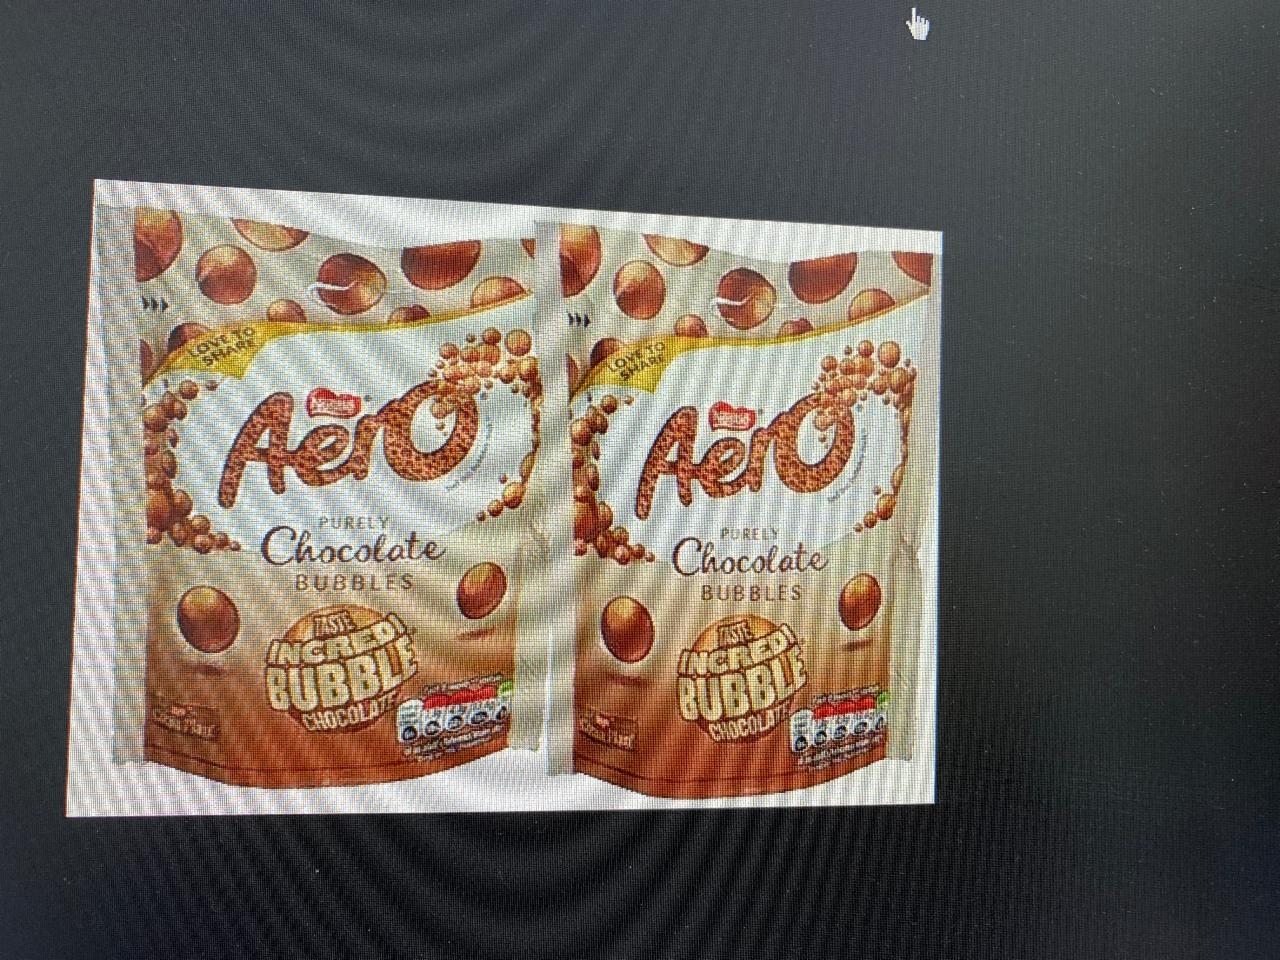 Фото - шоколадные шарики aero Nestle